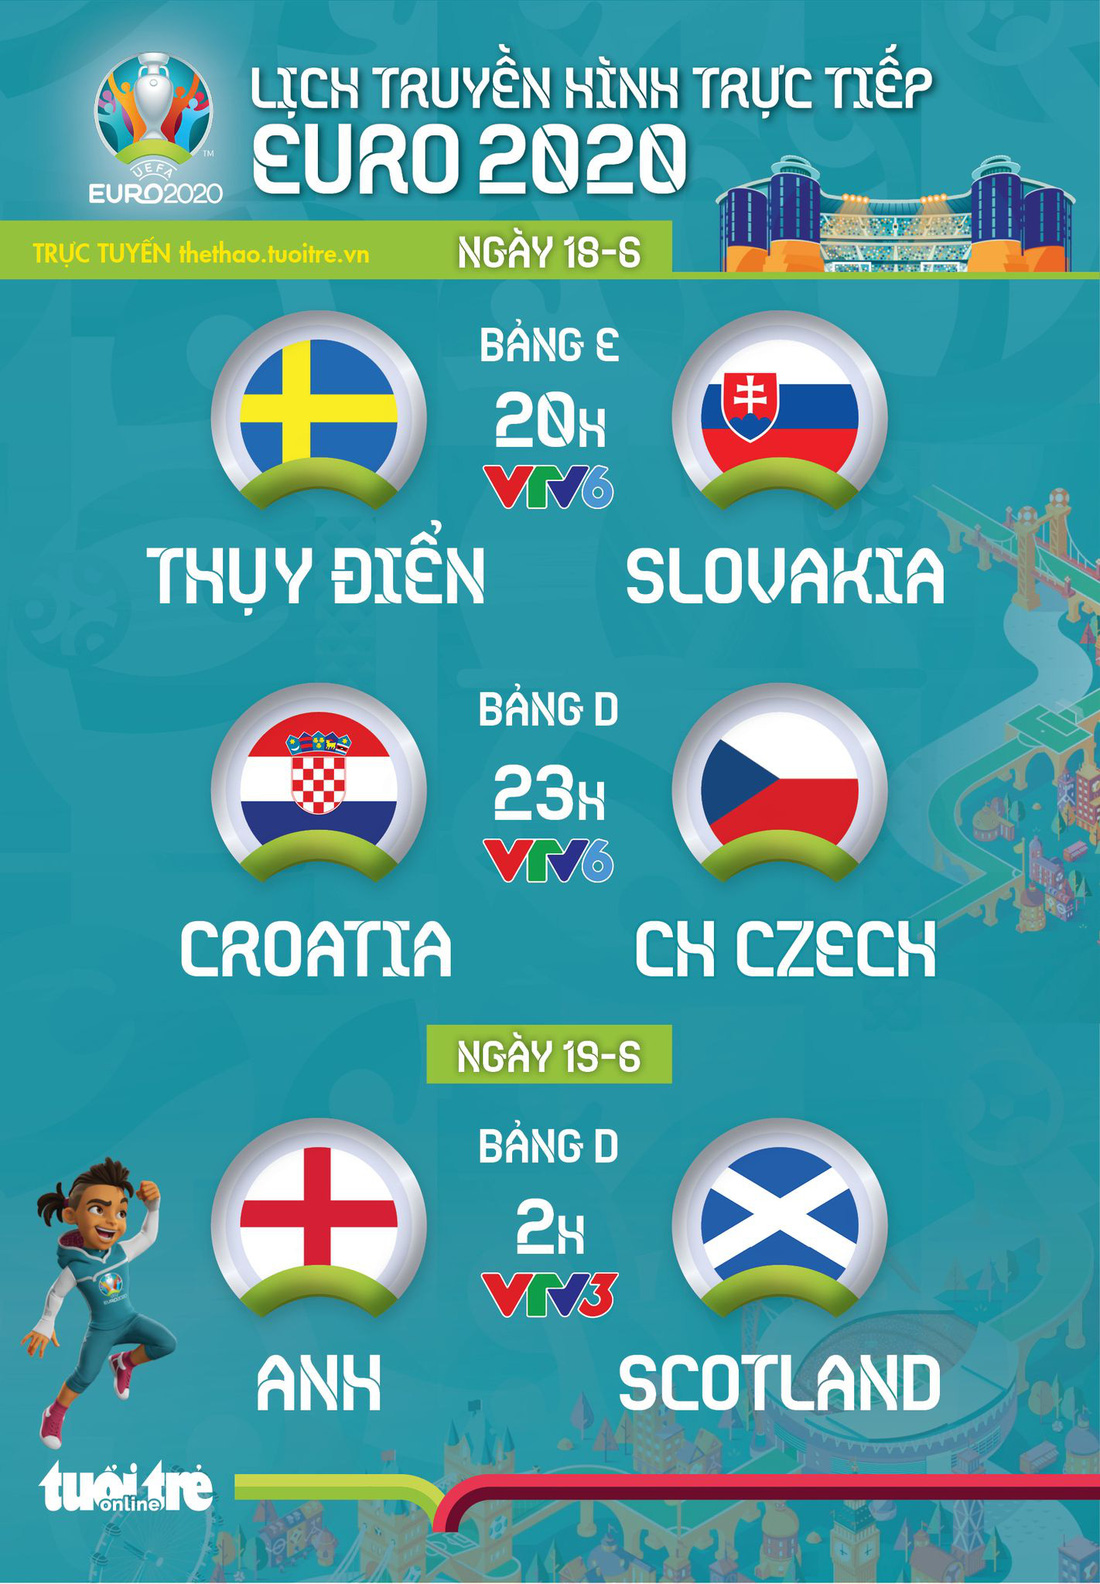 Lịch trực tiếp Euro 2020 ngày 18-6: Thụy Điển - Slovakia, Croatia - CH Czech, Anh - Scotland - Ảnh 1.